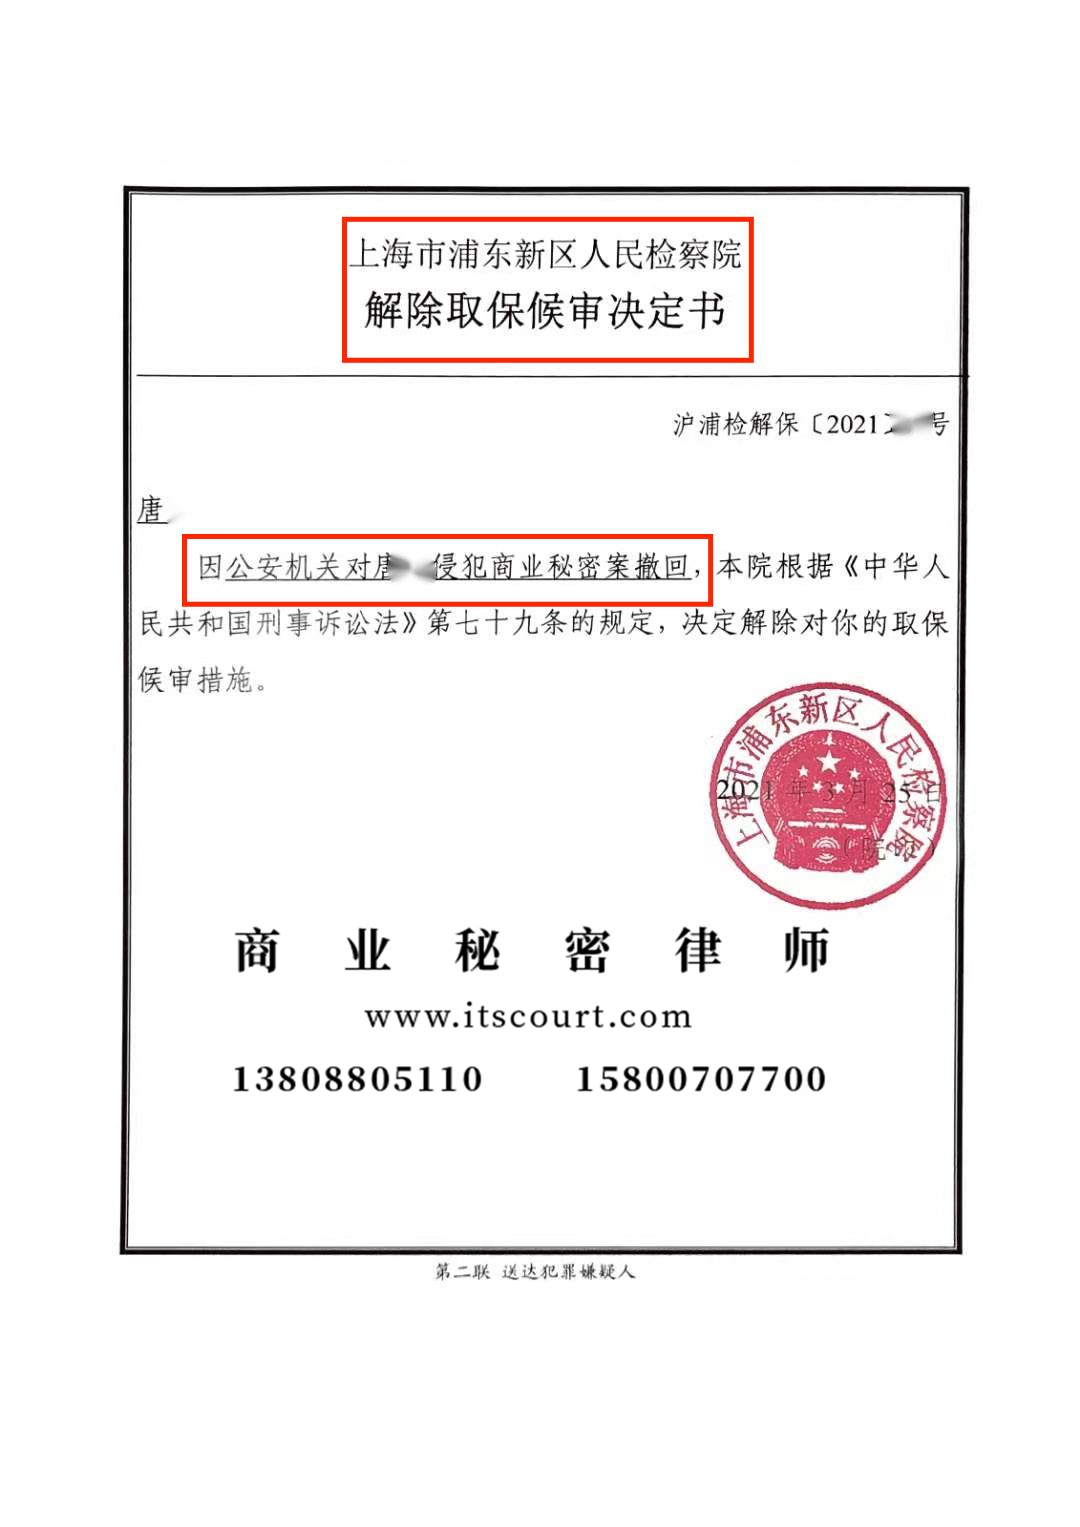 <b>2021年上海唐X侵犯商业秘密罪撤案</b>